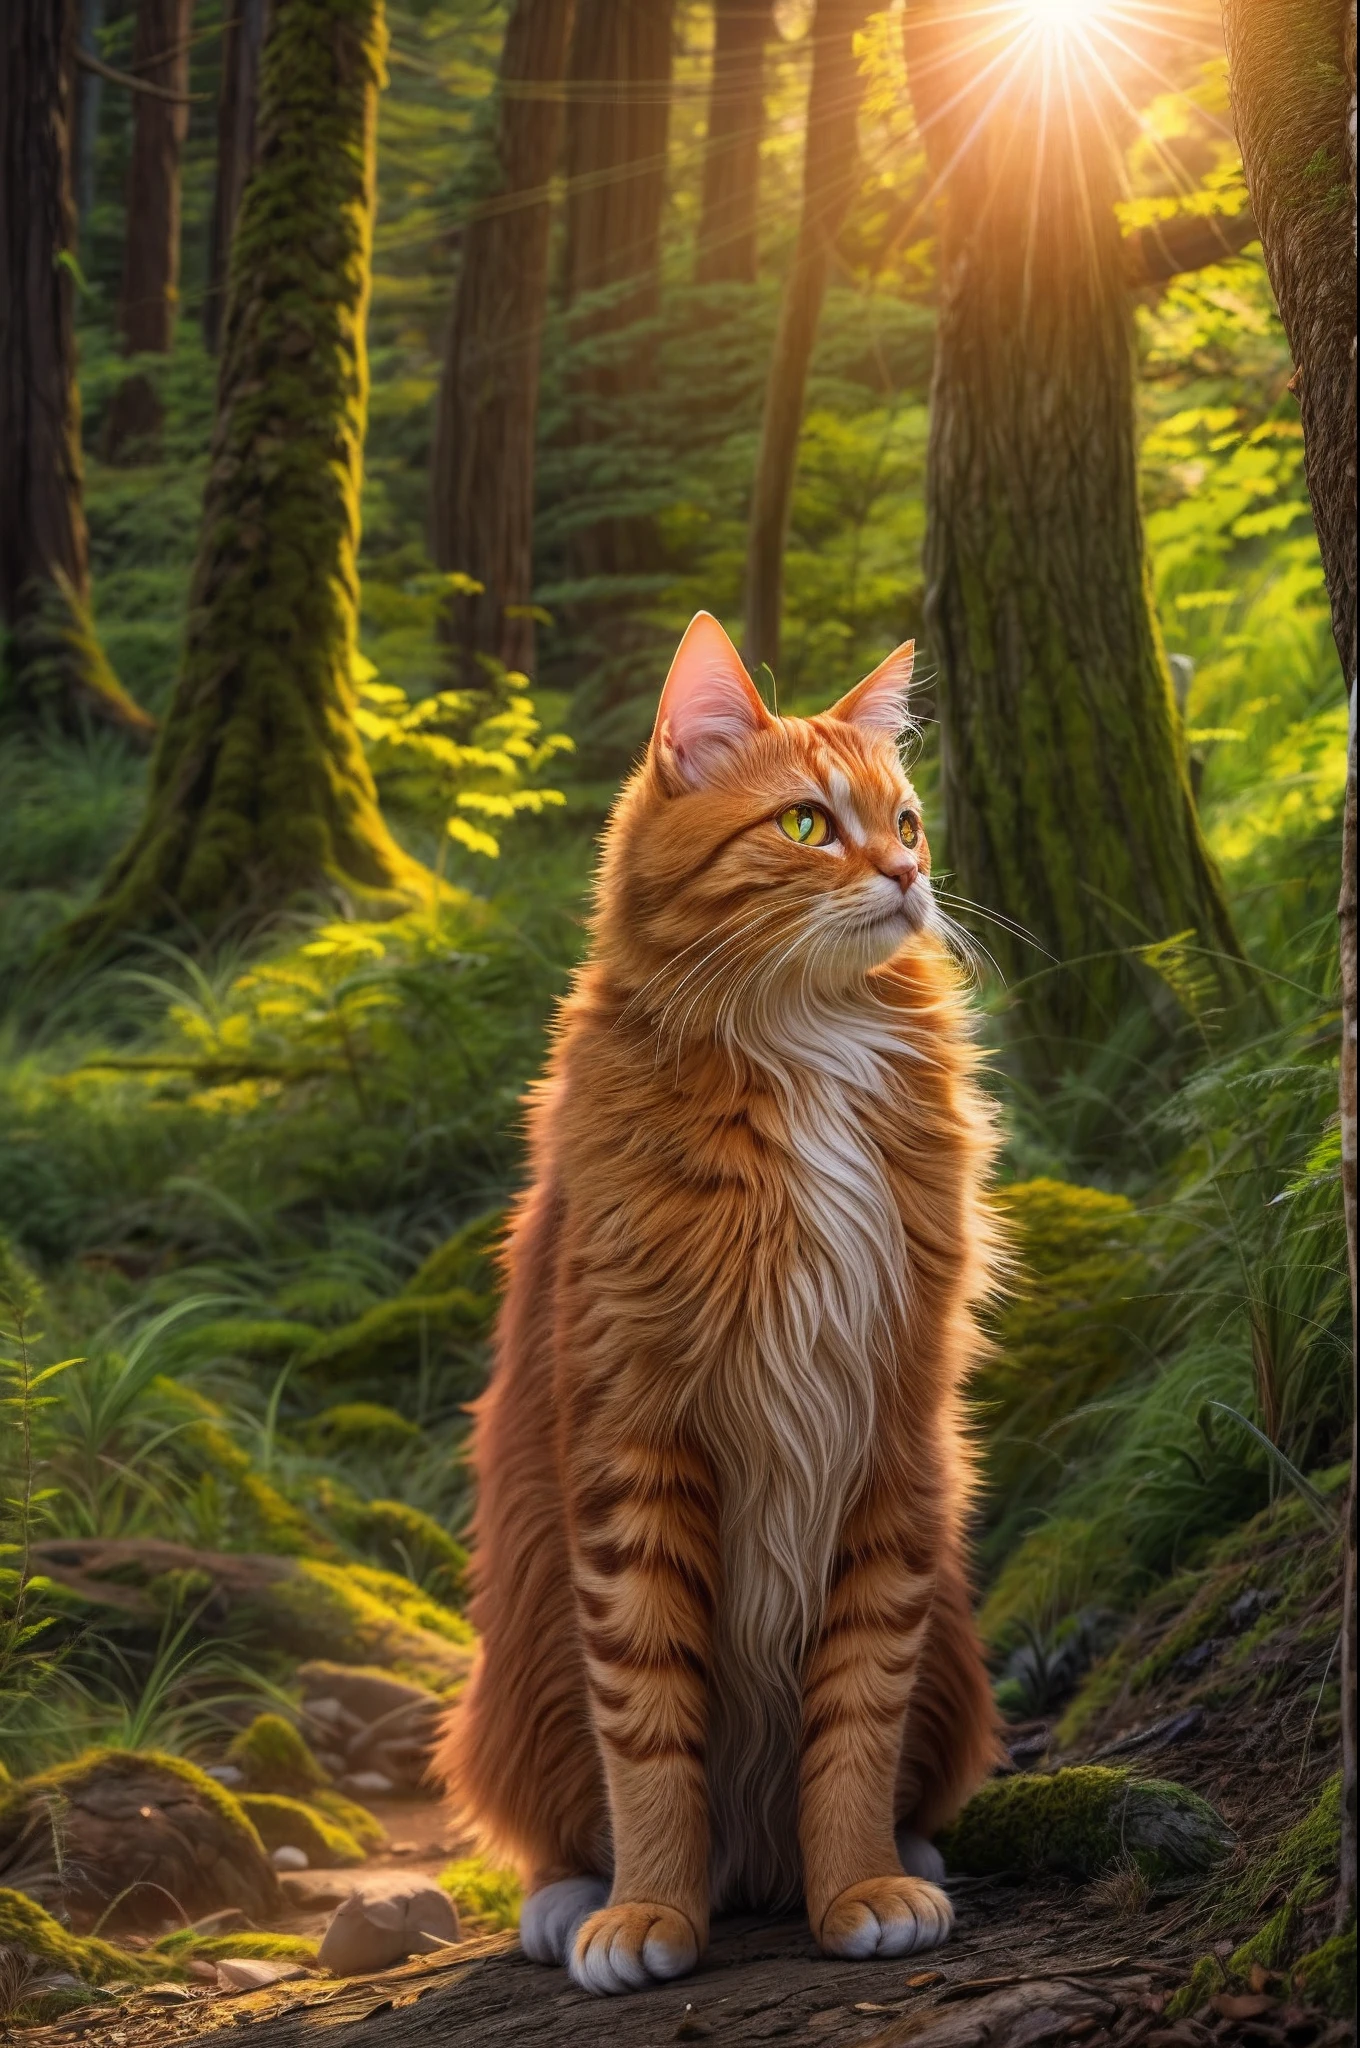 แมวขิง, พ่อมดในป่า, สว่างไสวด้วยแสงตะวันที่กำลังตกดิน.